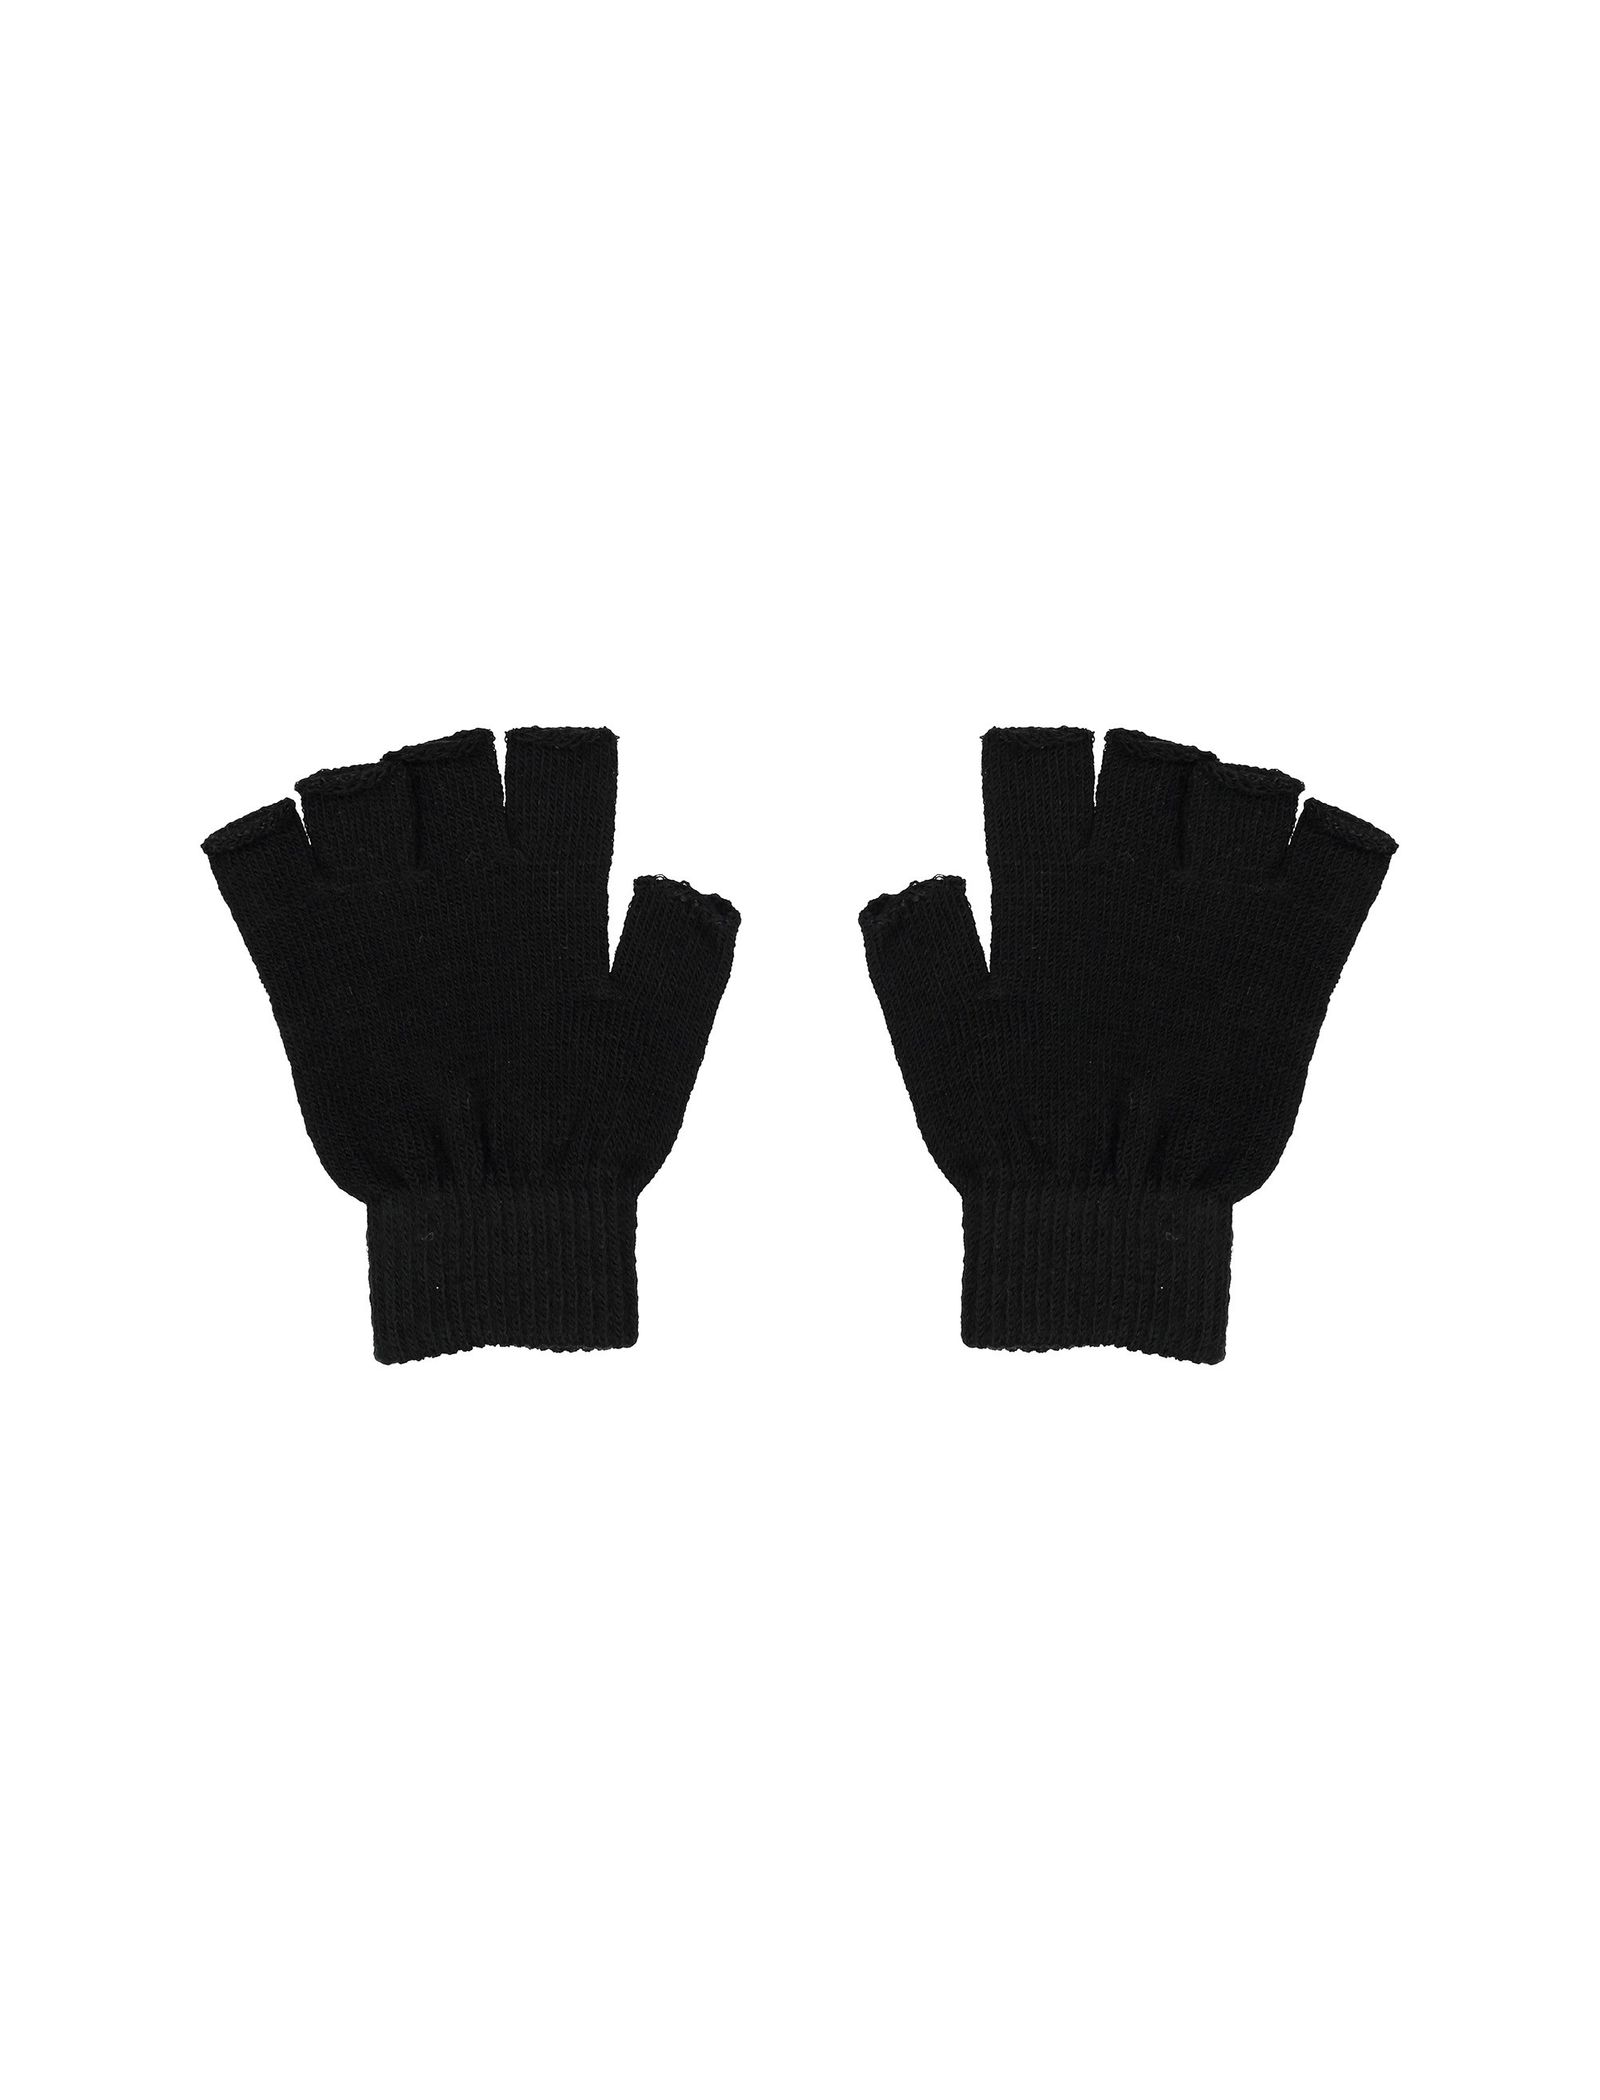 دستکش بدون انگشت زنانه بسته 2 عددی - جنیفر - سفيد و مشکي - 6